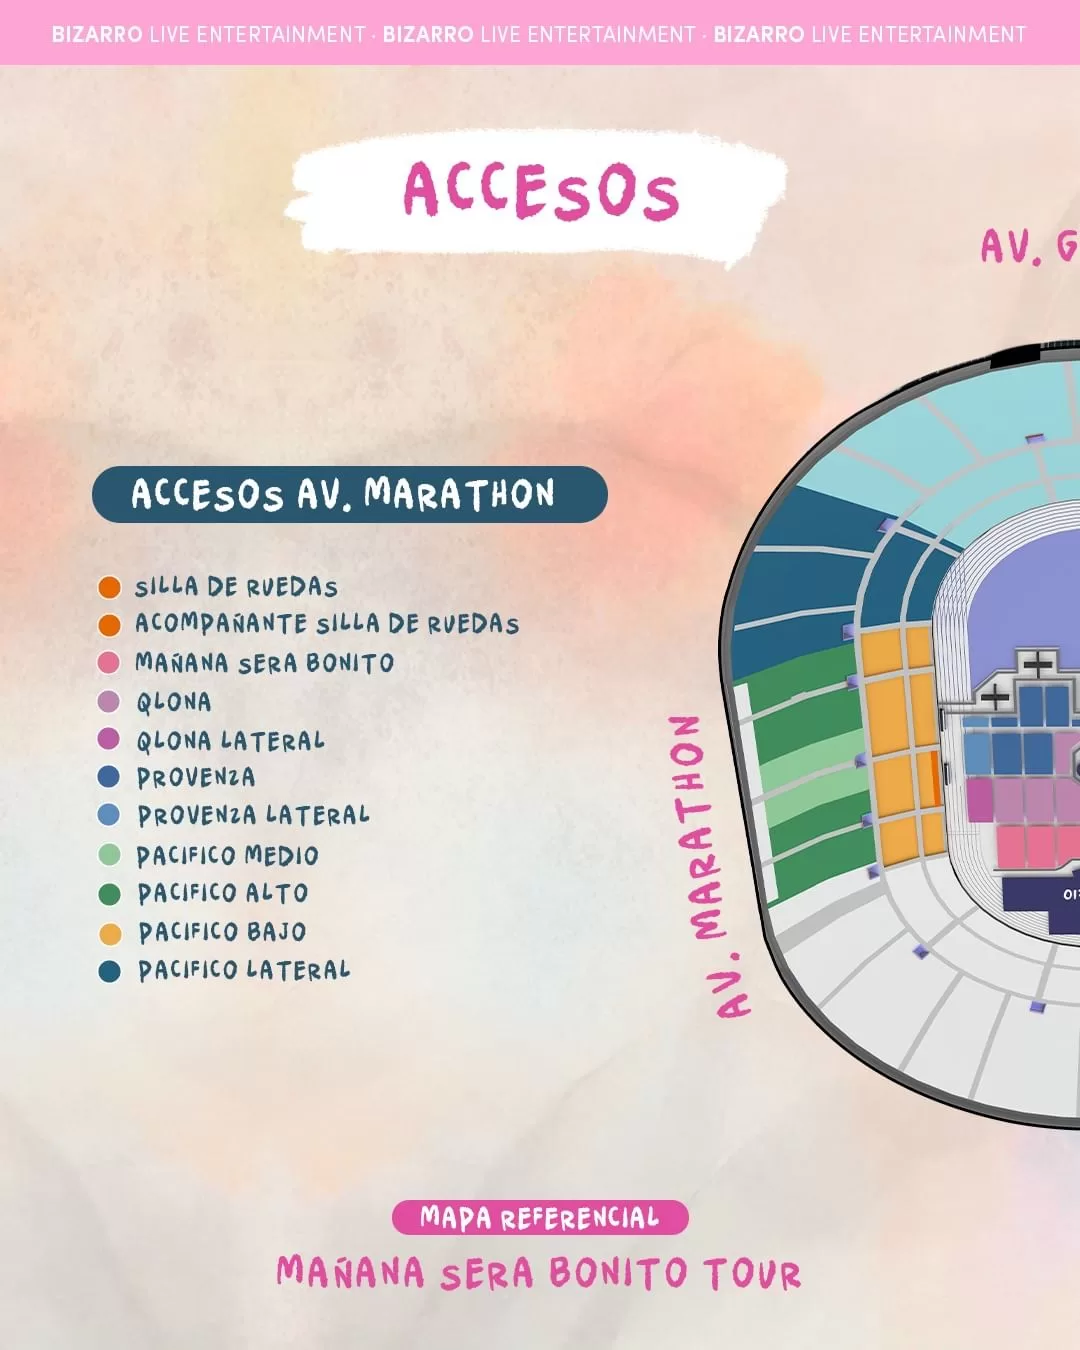 karol g en chile 2024: estos son los cortes de calles y accesos por sus conciertos